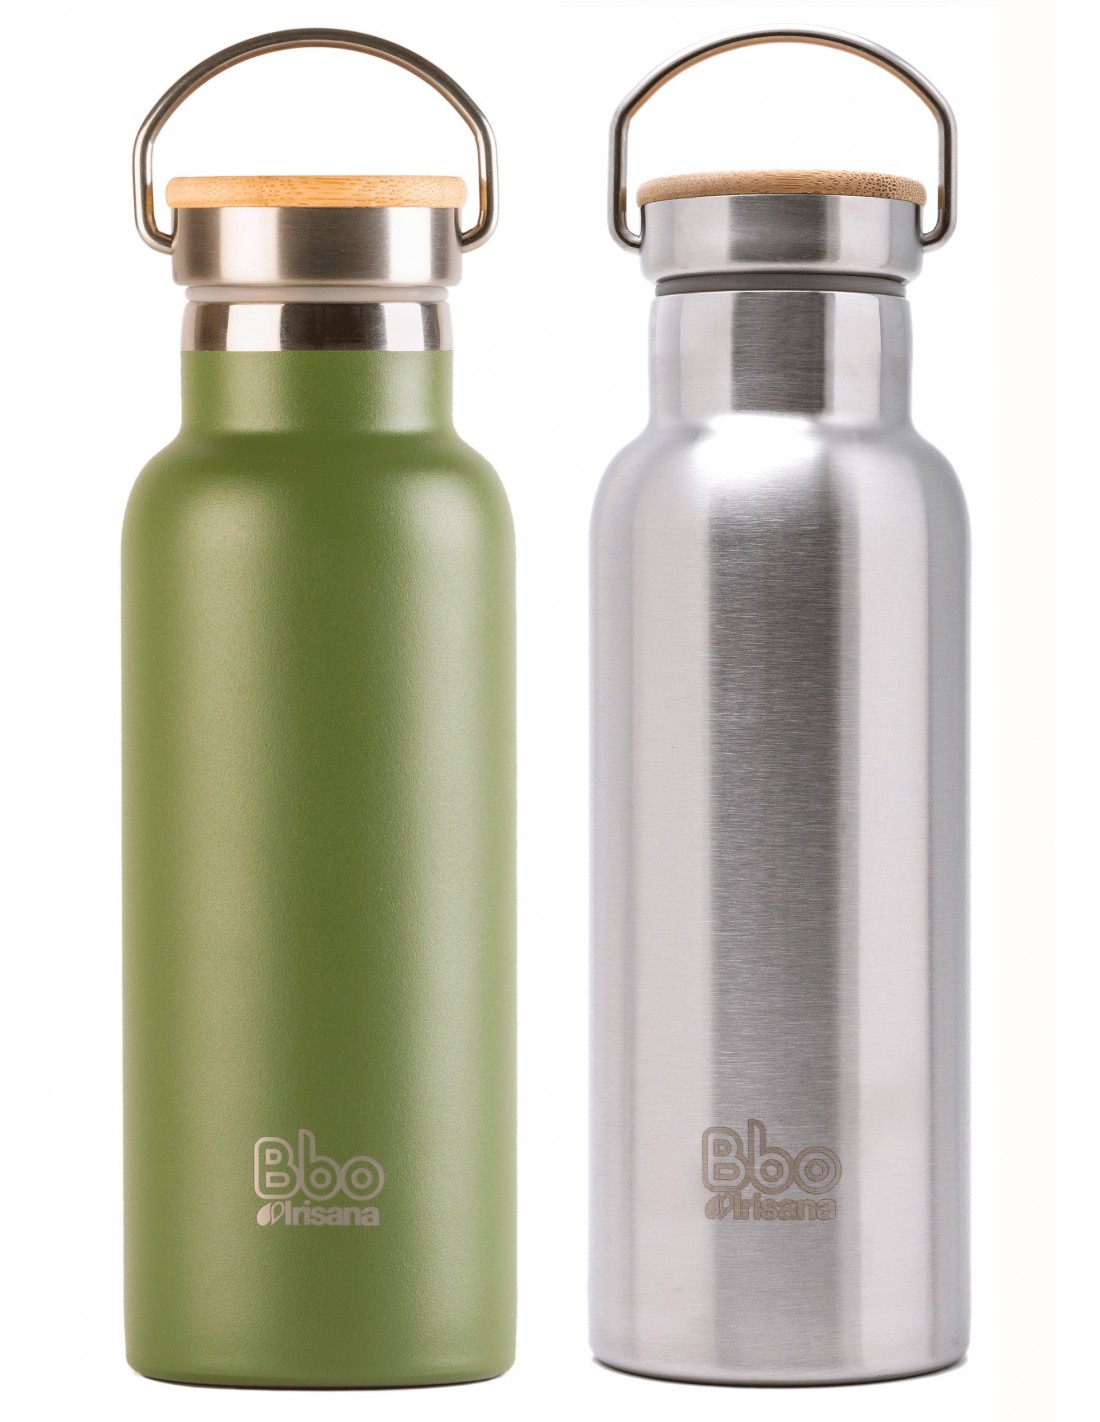 Botella termo reutilizable con tapón de bambú. 500 ml. BBO14